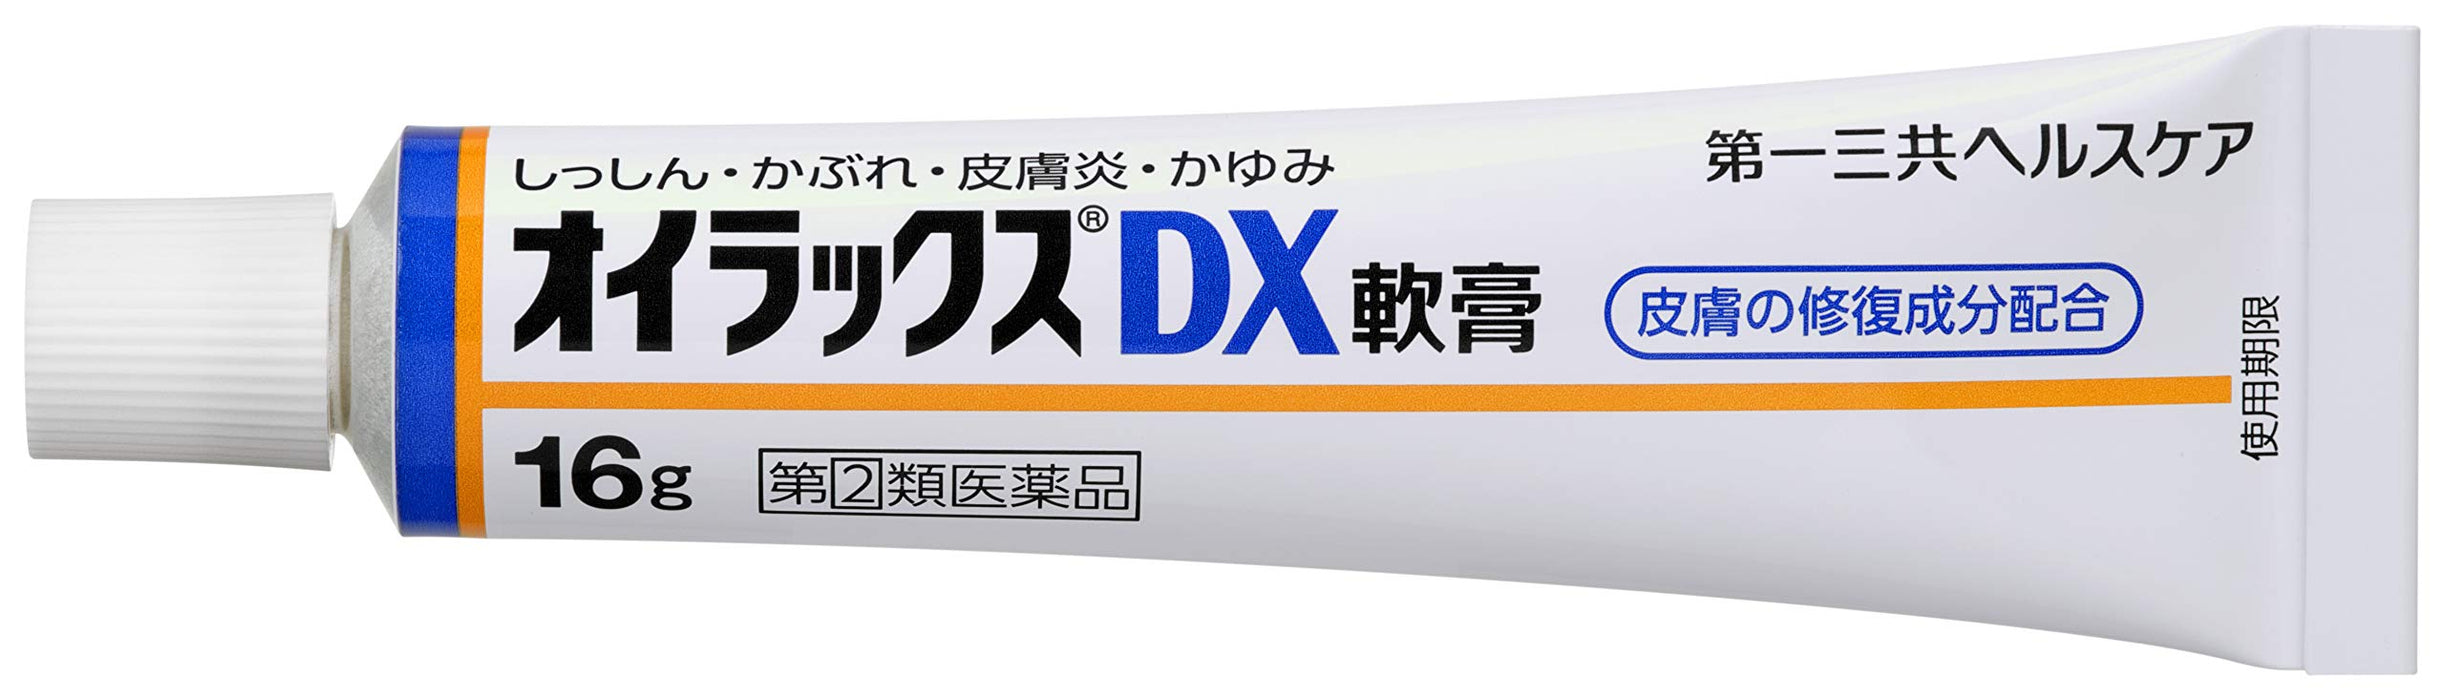 Oilax Dx 軟膏 16G 2 種藥物 - 日本製造